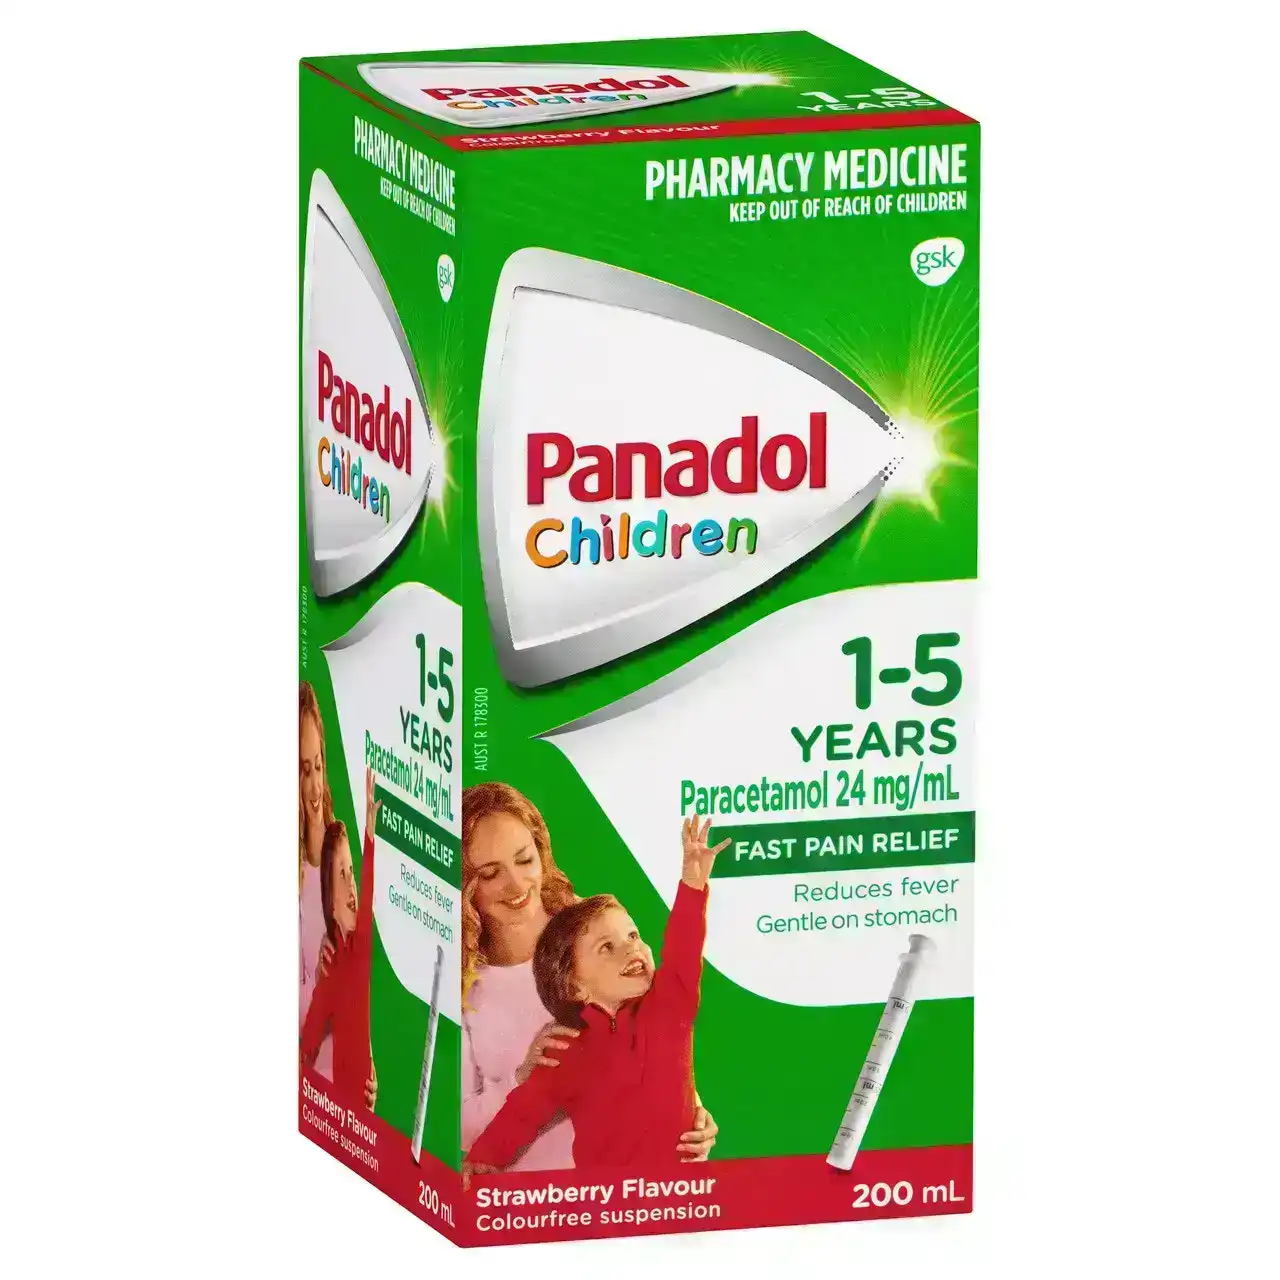 Panadol Children 1-5 years Colourfree Suspension, Strawberry Flavour, 200ml